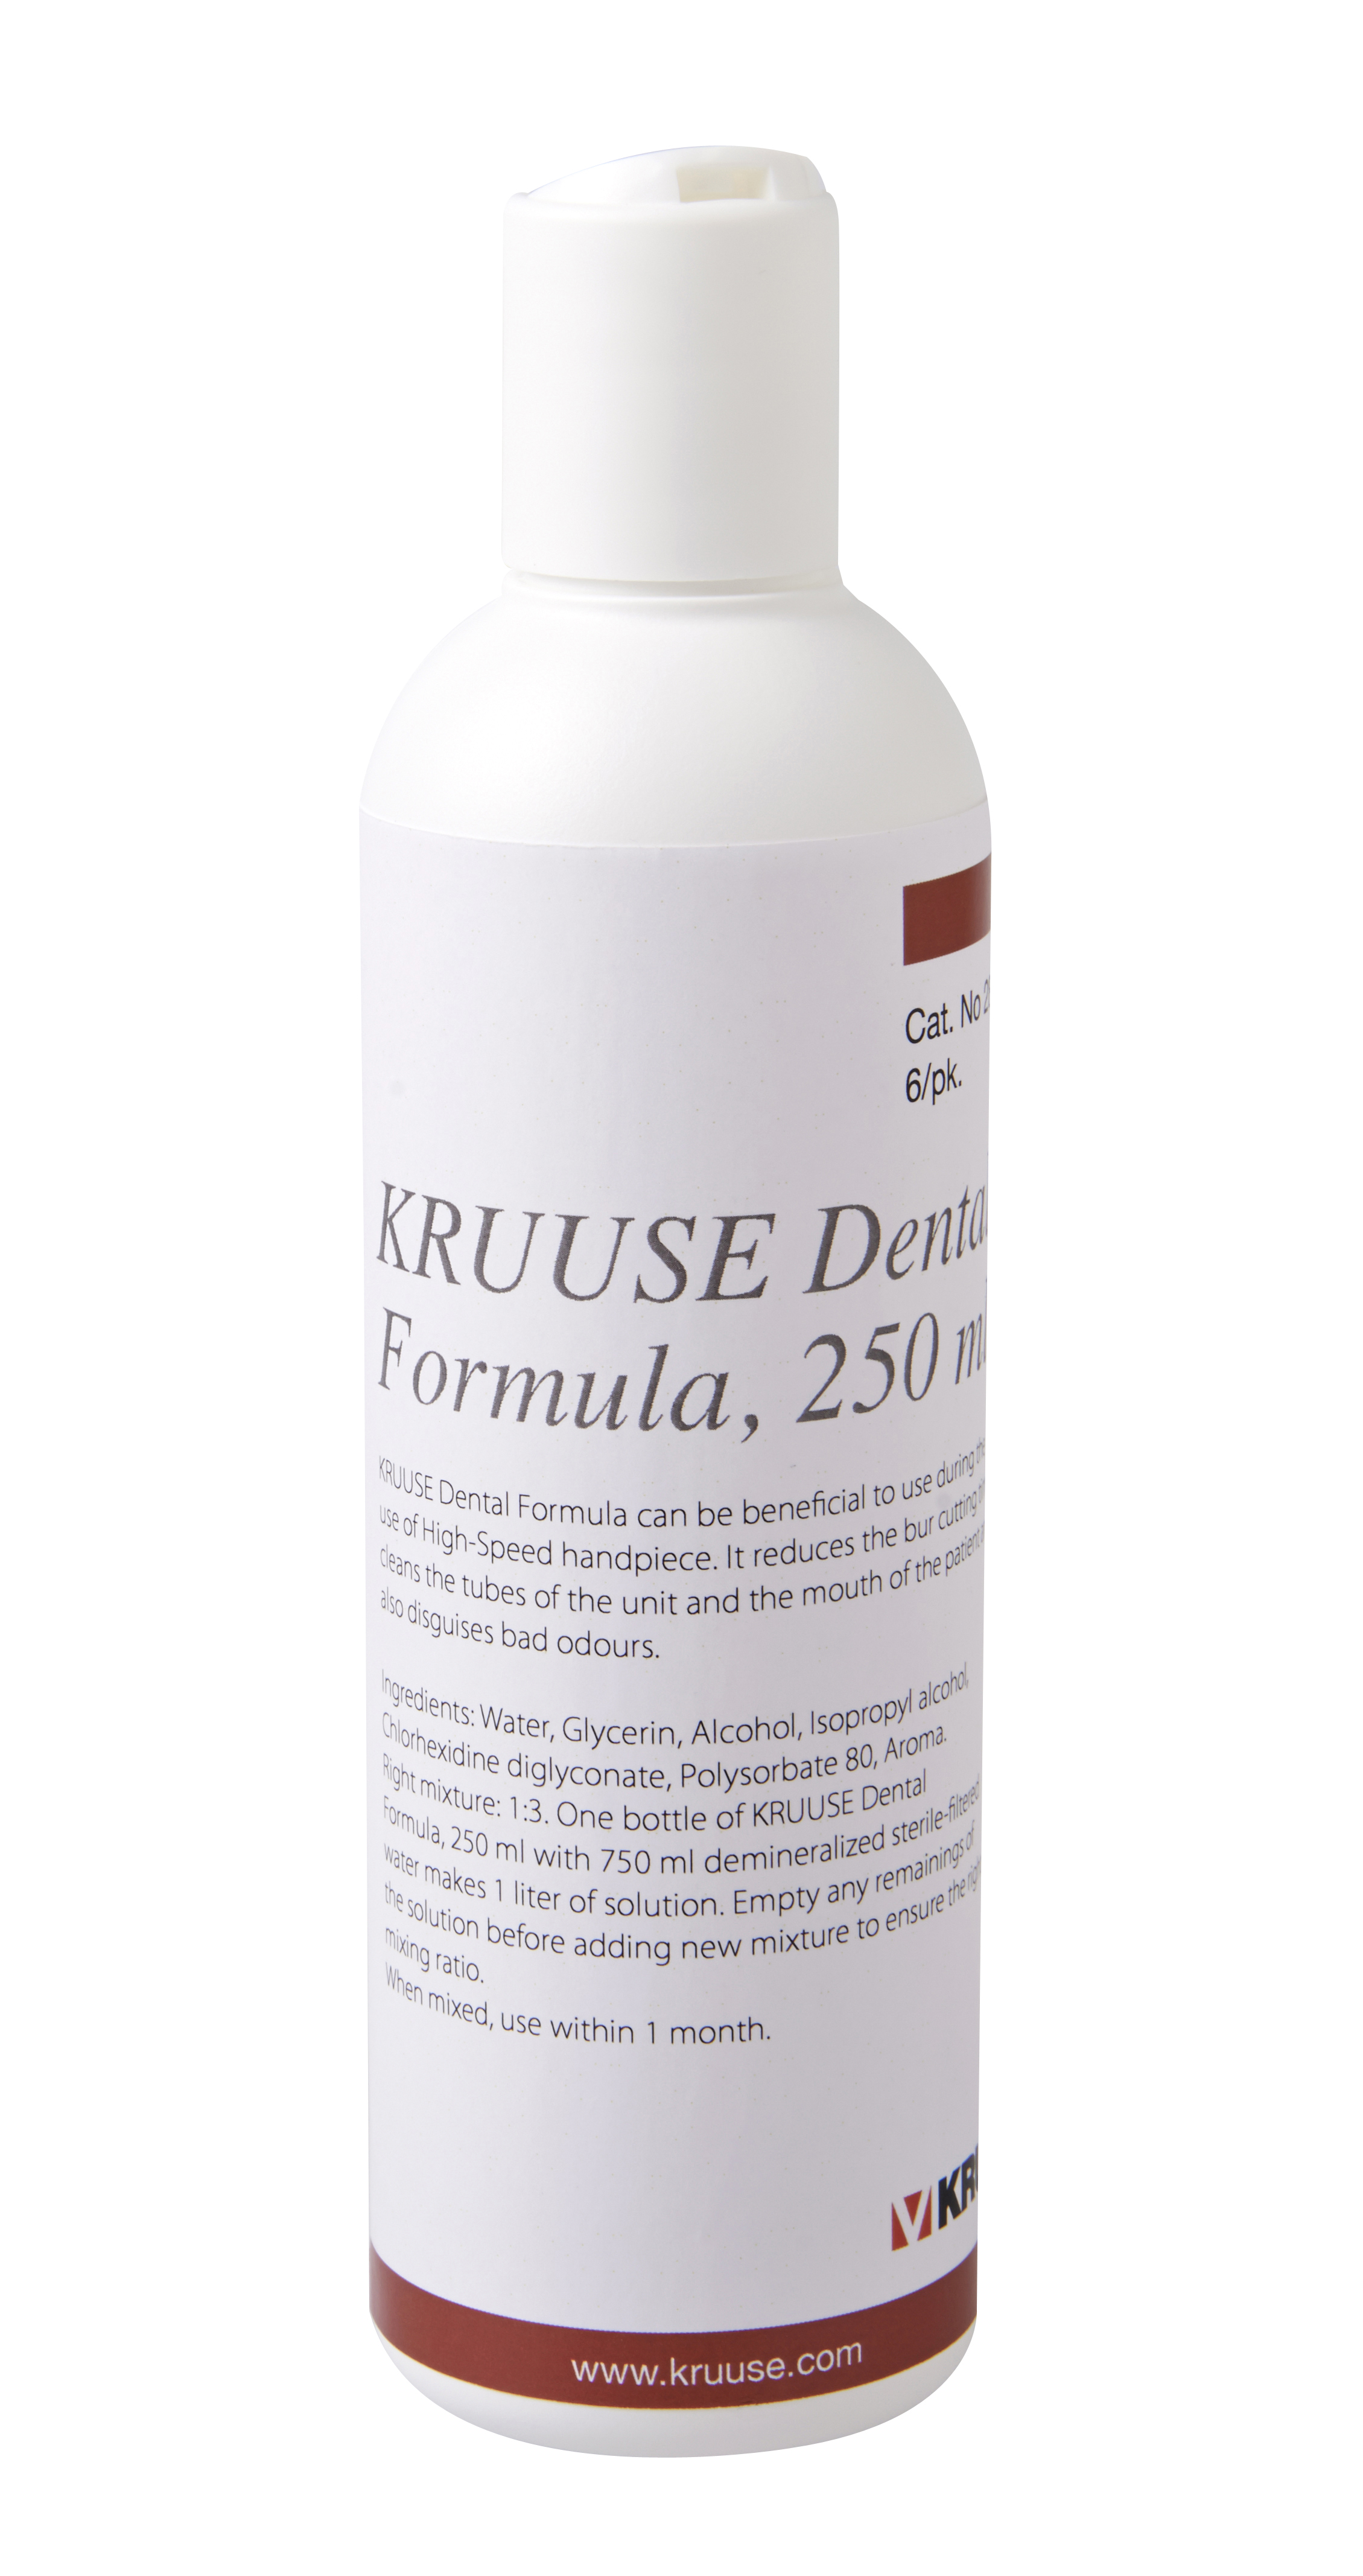 KRUUSE dental formula, 250 ml 6/pk